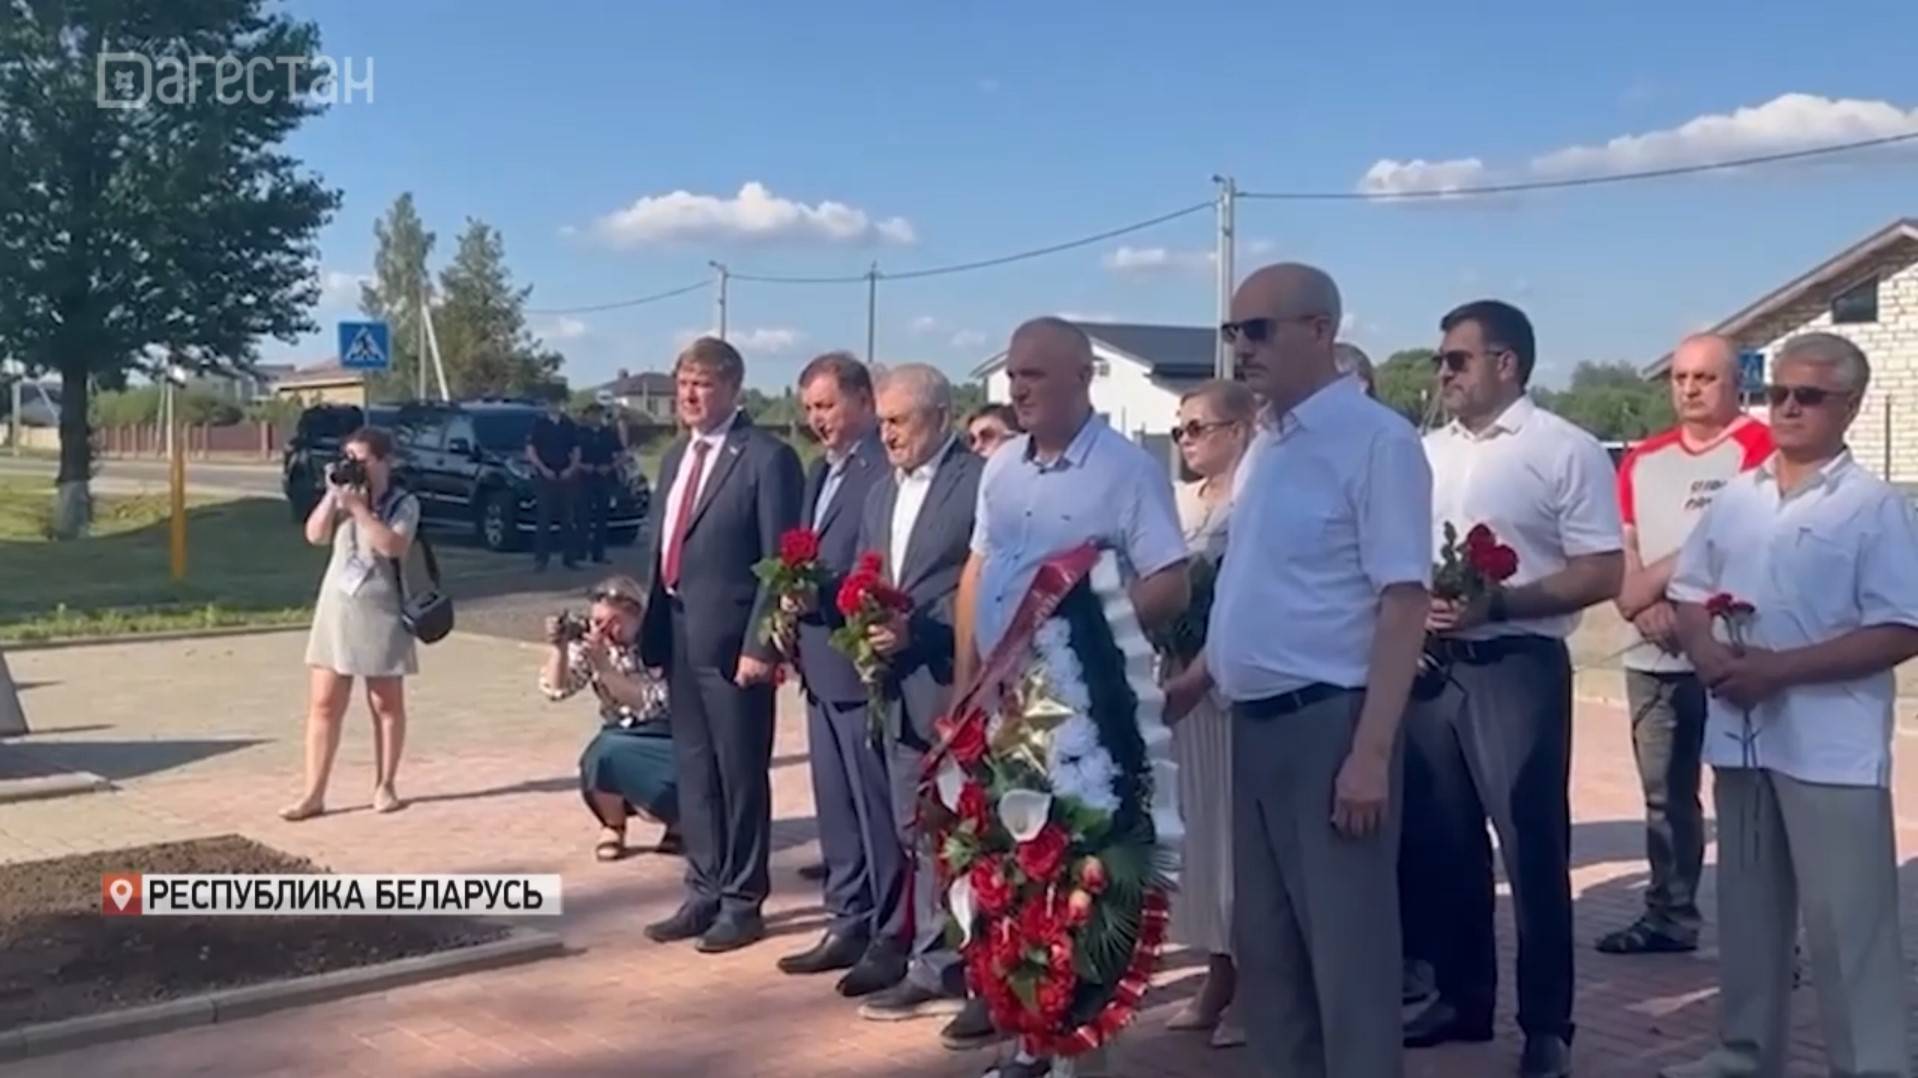 Дагестанская делегация почтила память павших советских воинов в  Республики Беларусь